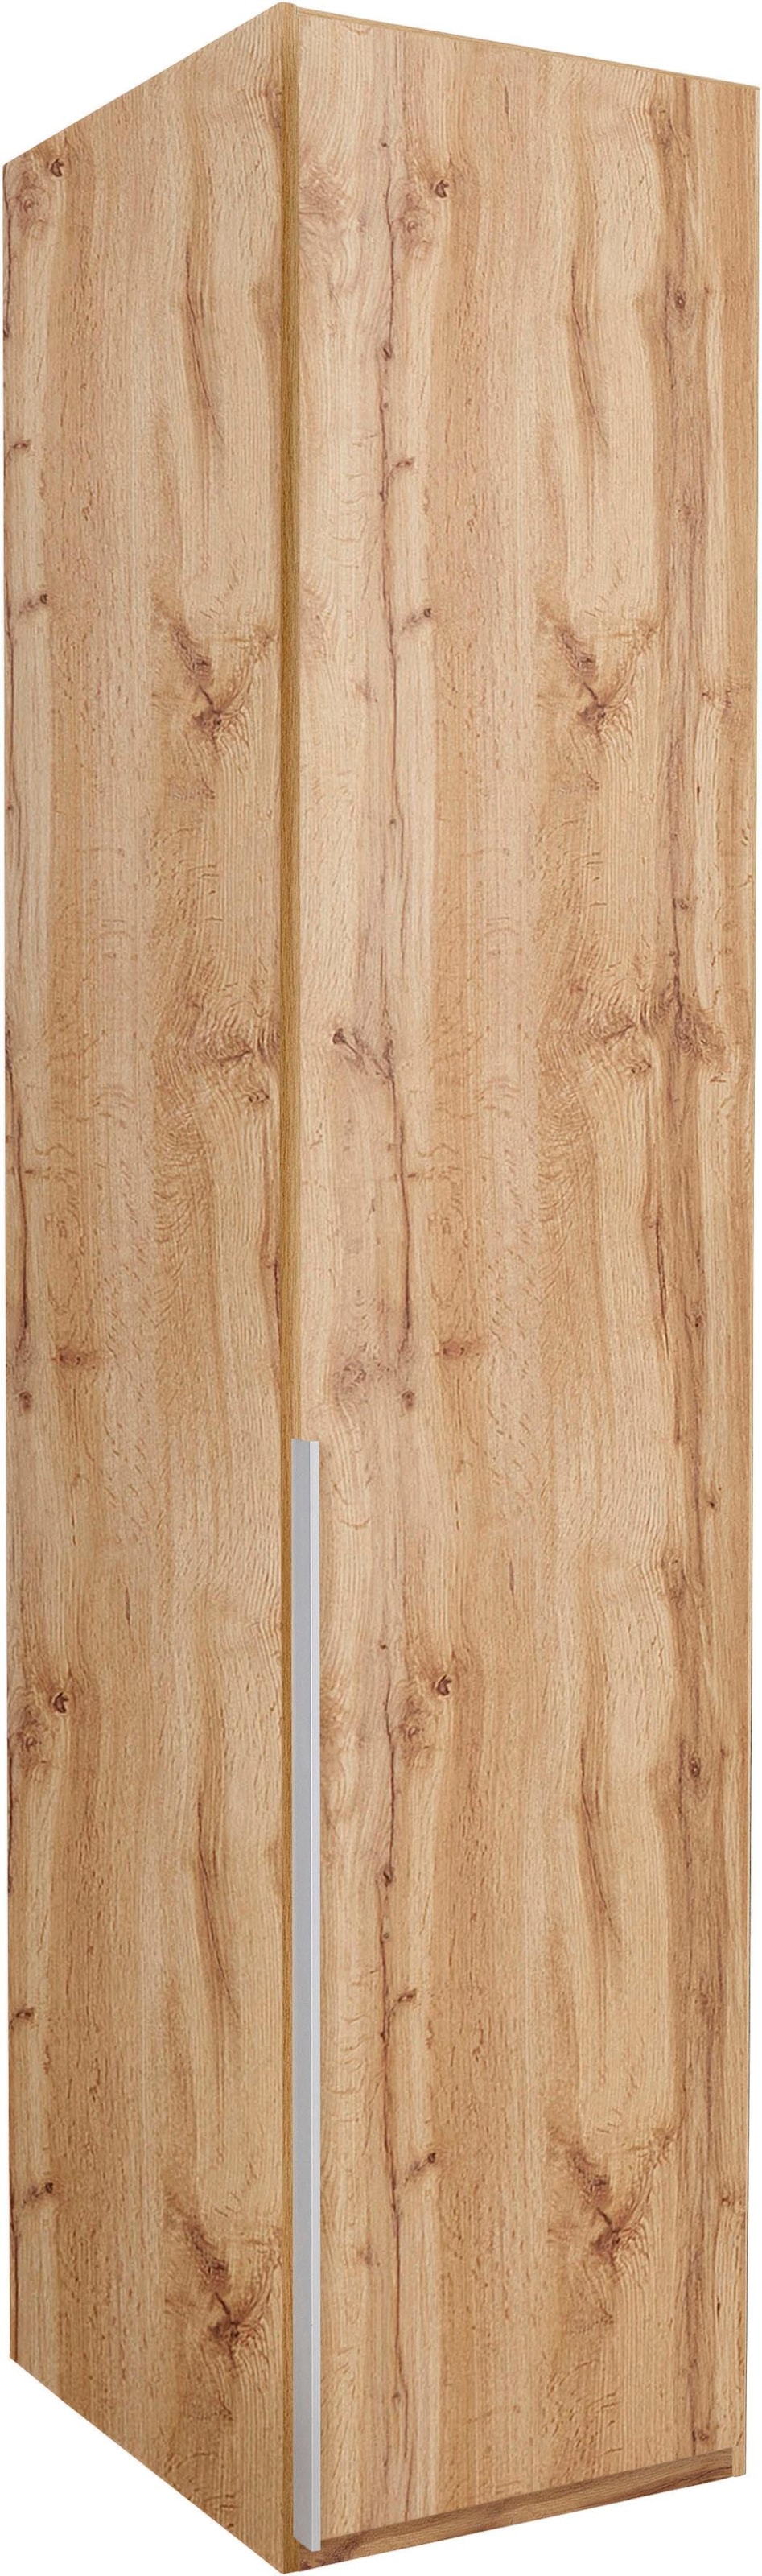 FMD Mehrzweckschrank »Inca 1«, Garderobenschrank, Breite 50 cm, Höhe 184 cm  kaufen